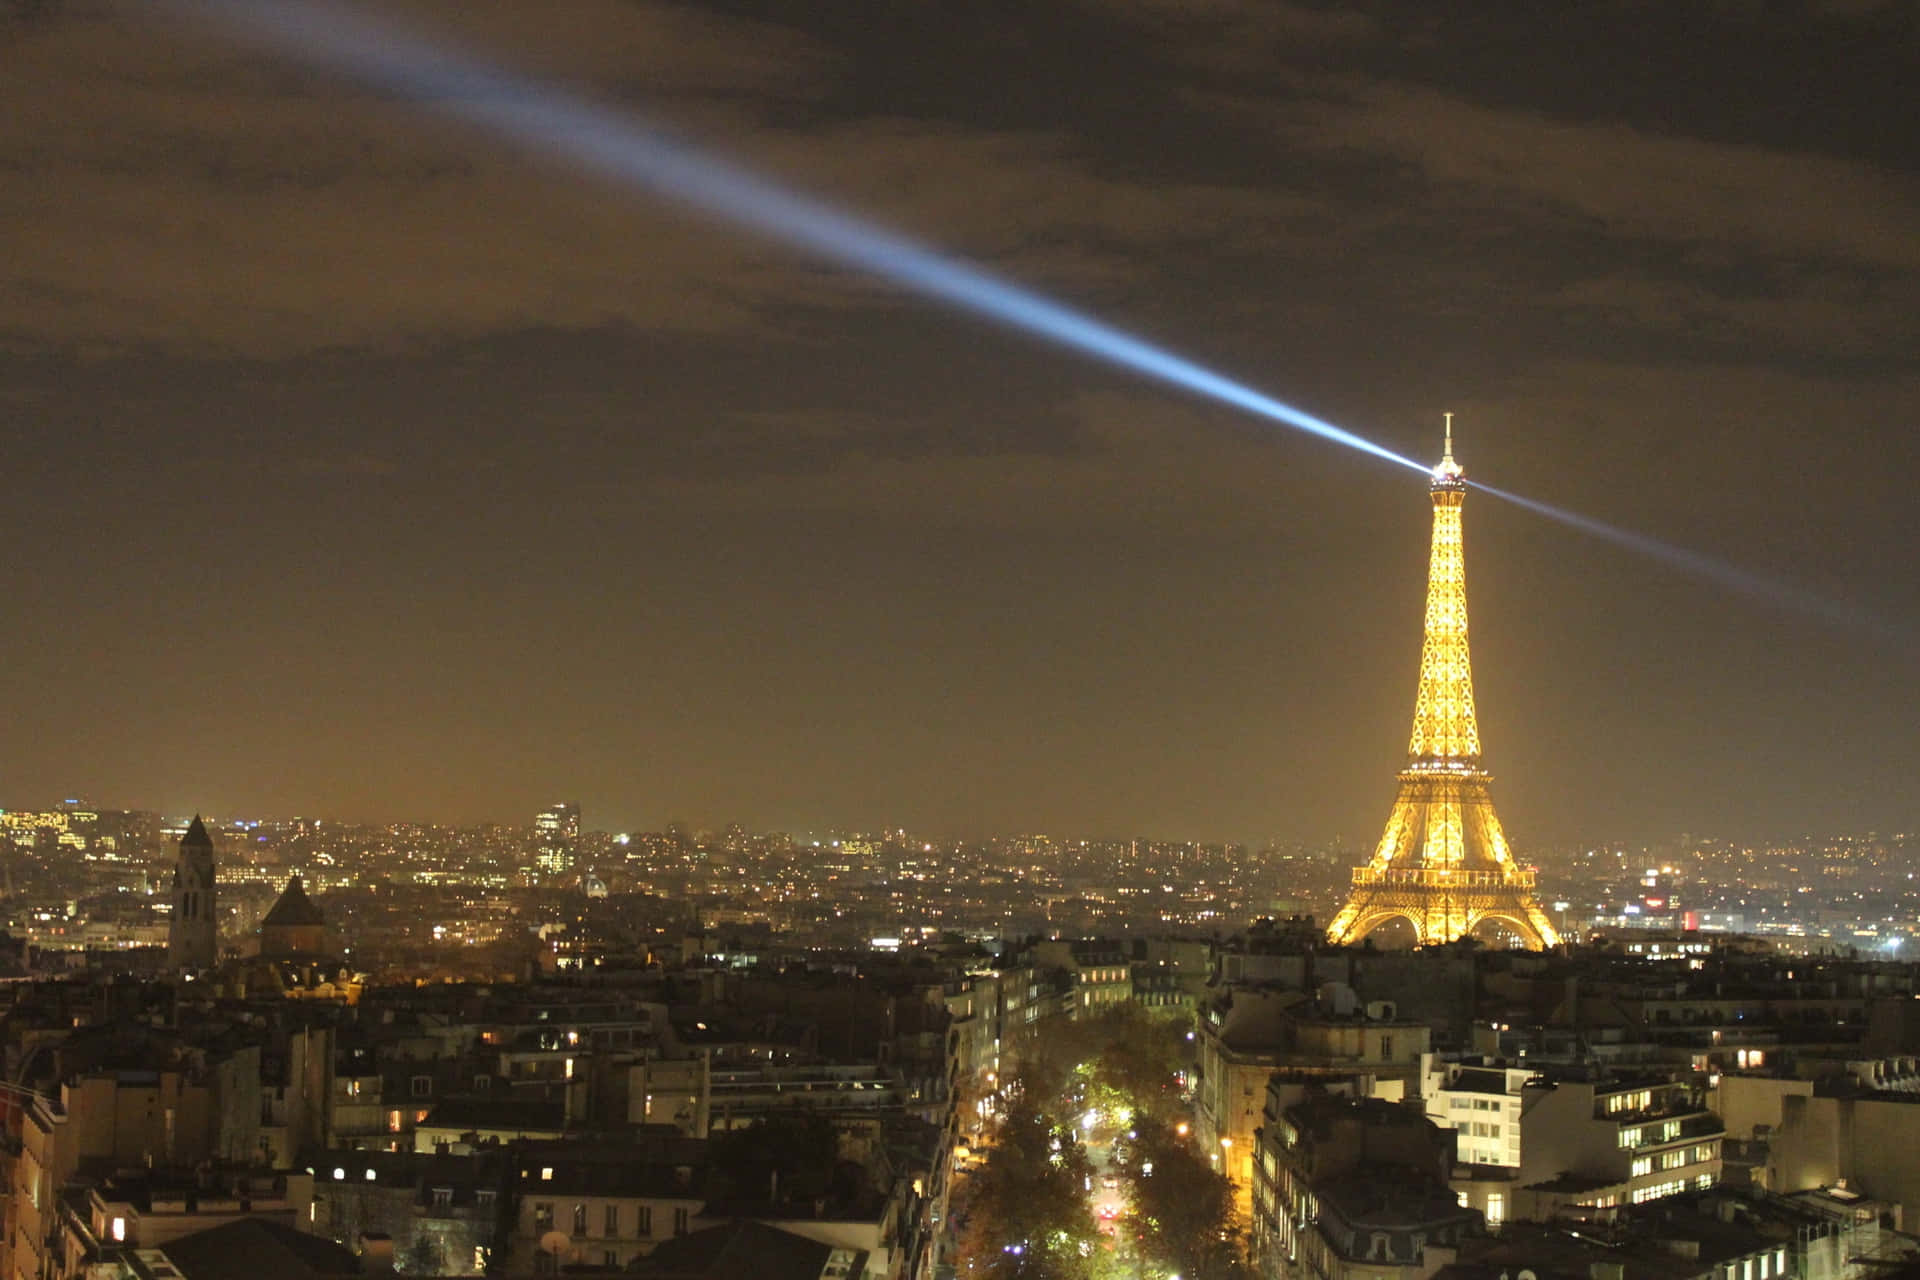 Bilddes Beleuchteten Eiffelturms Bei Nacht